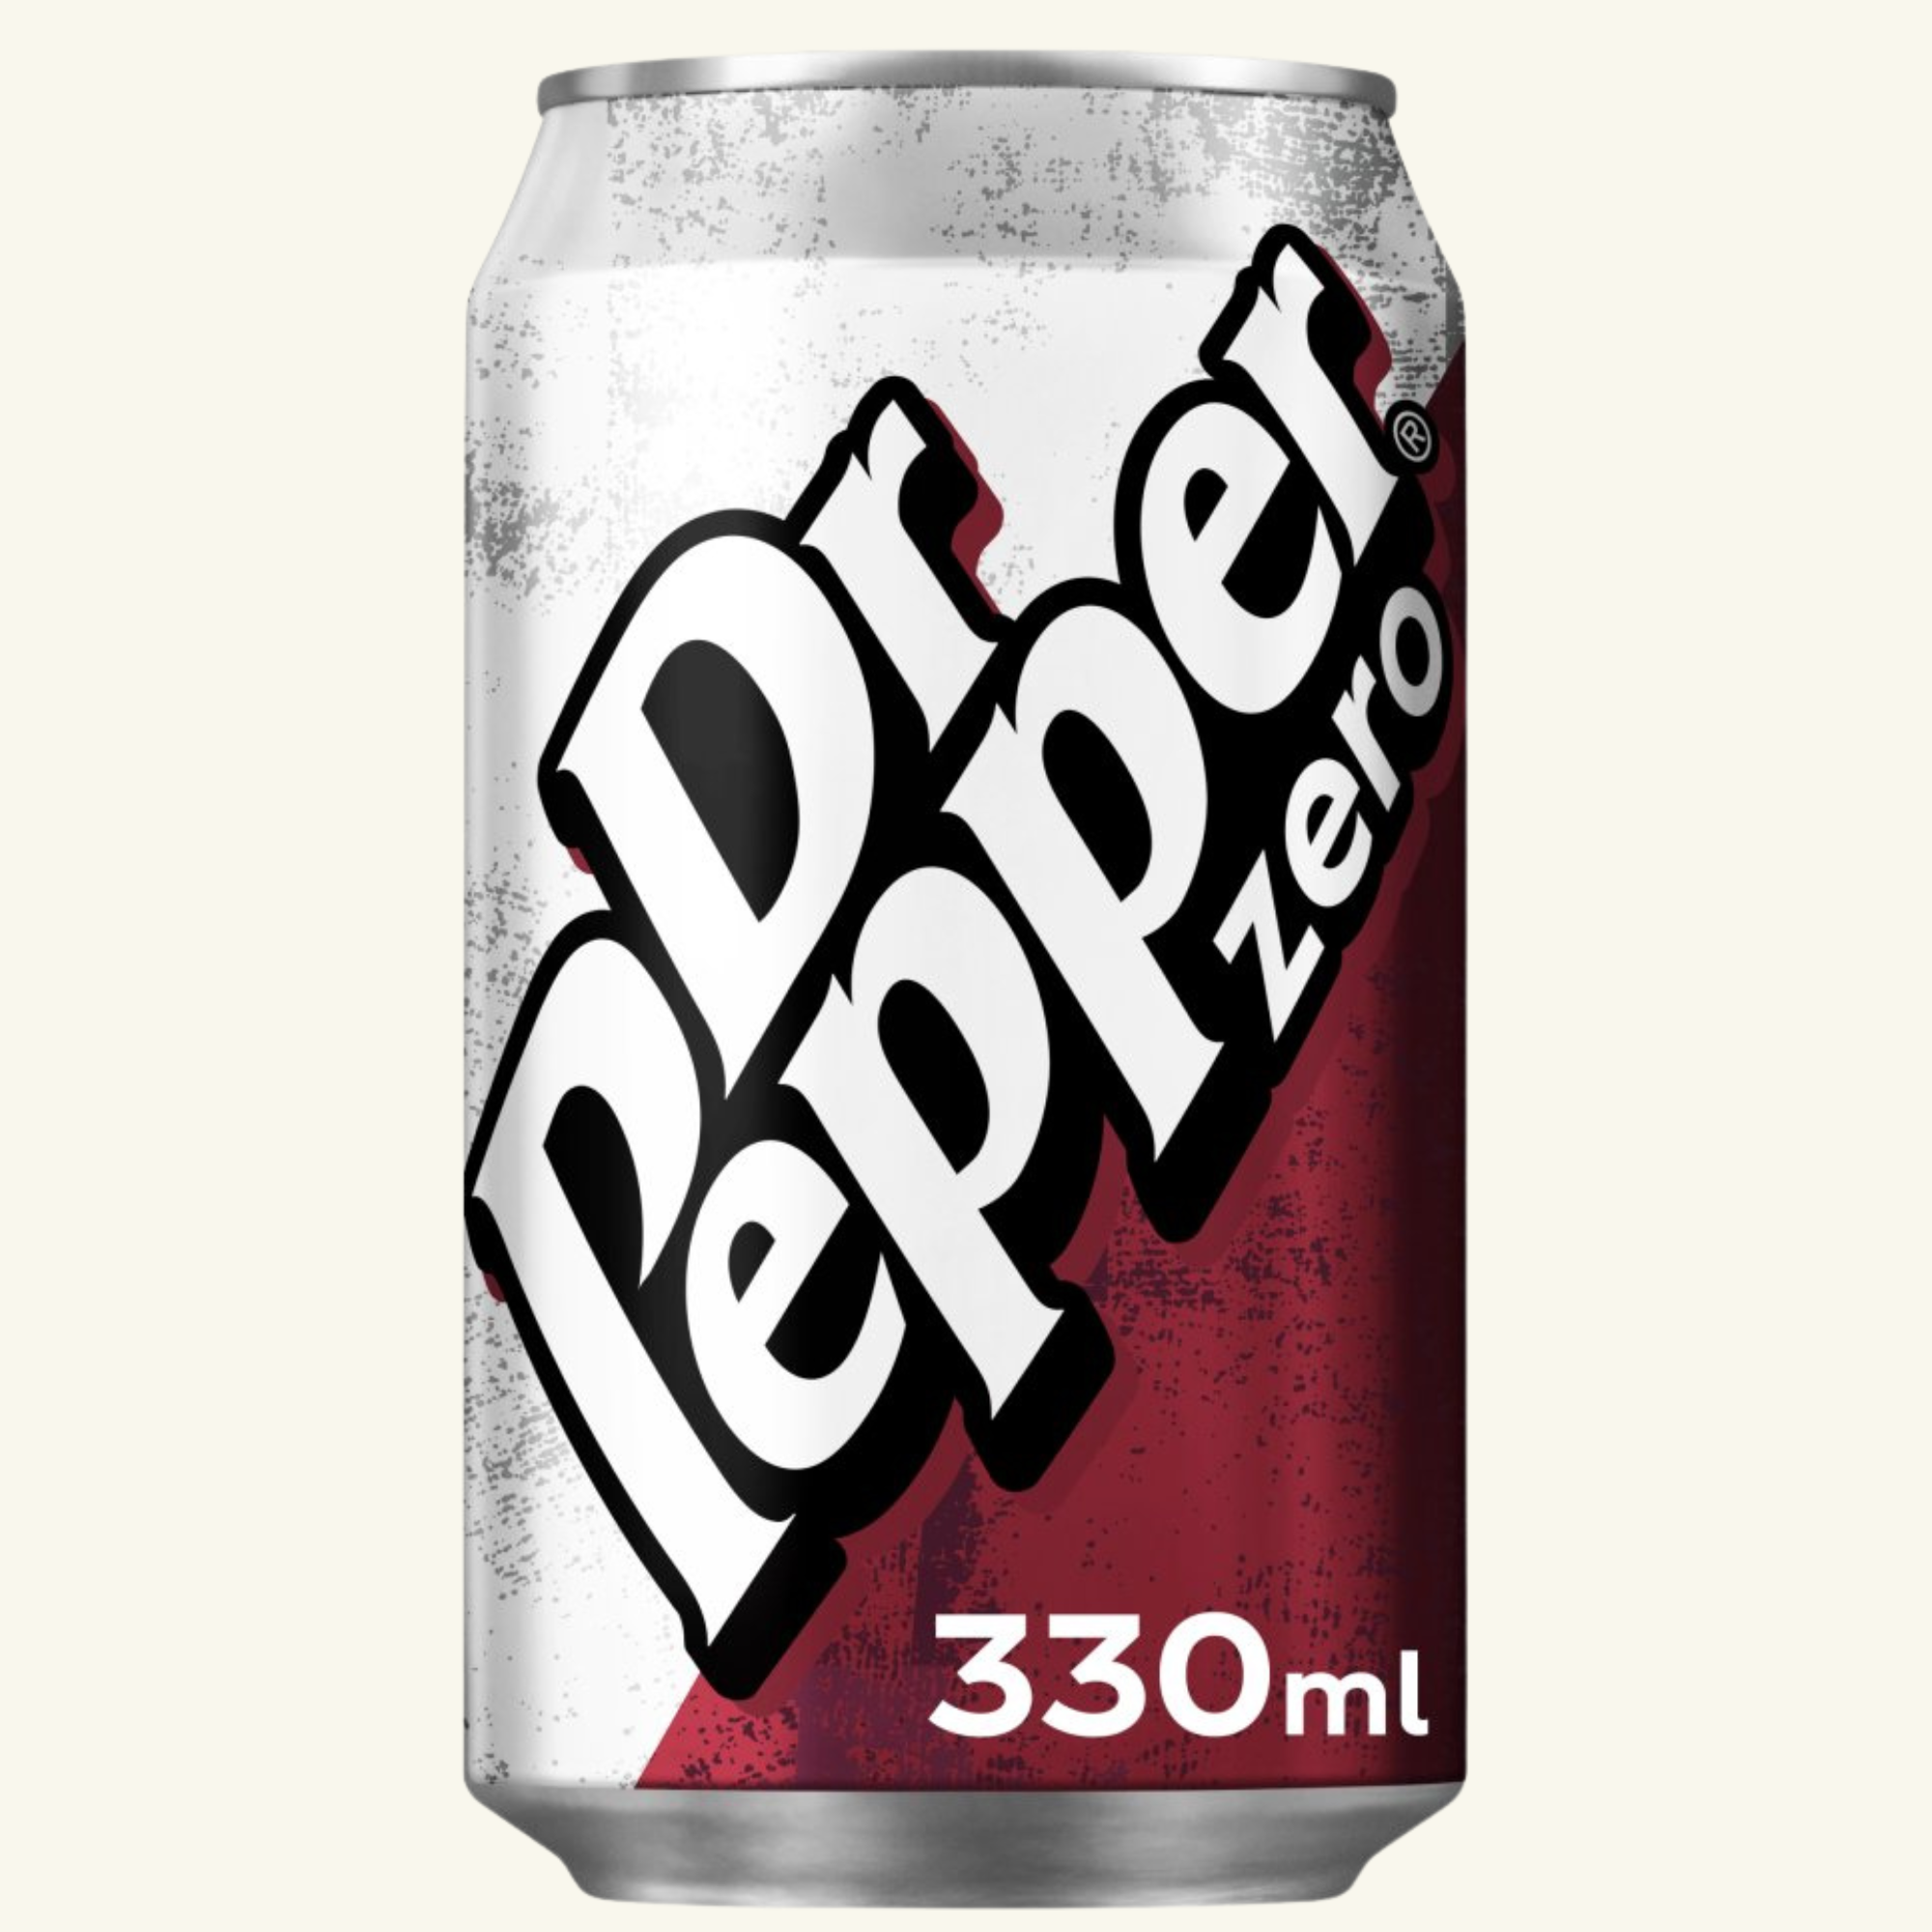 Dr Pepper zero